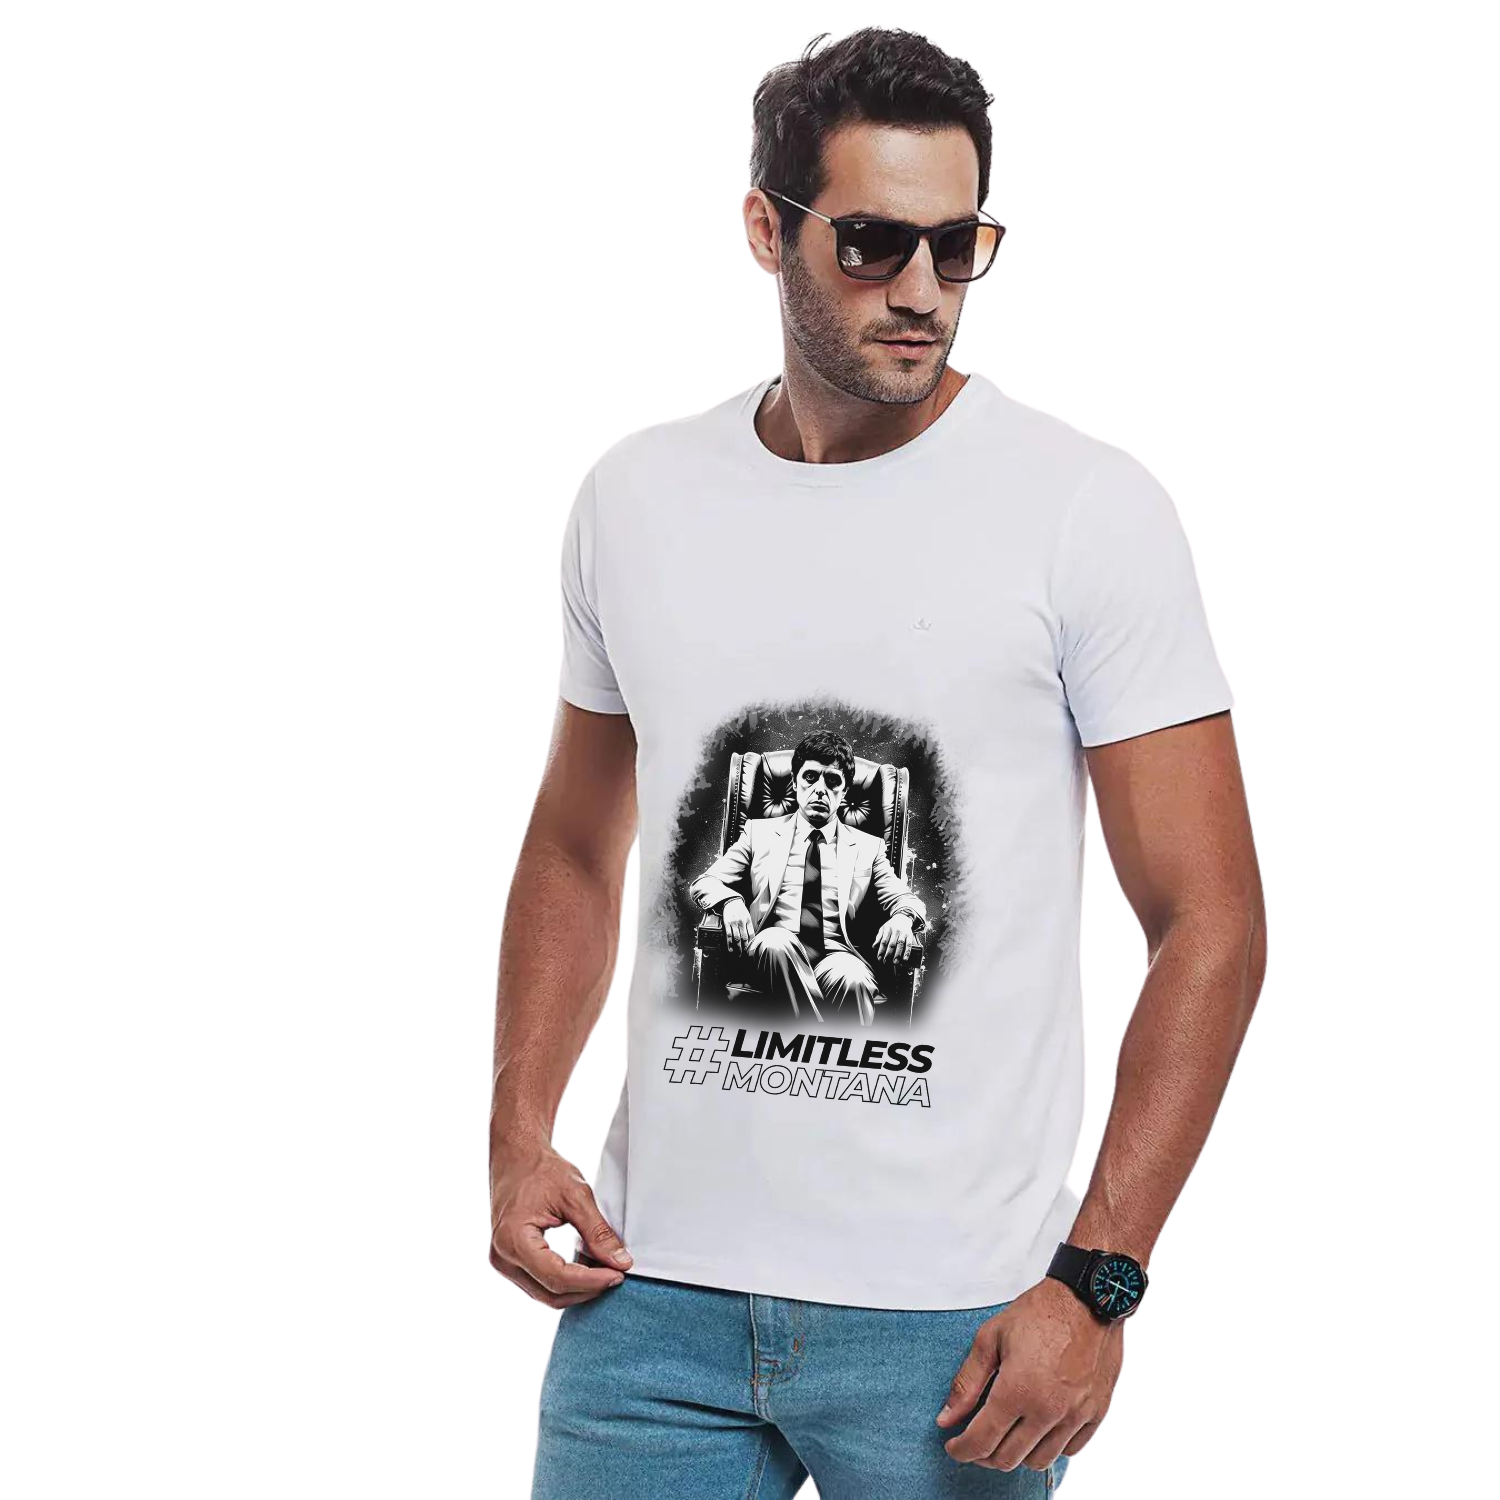 T-Shirt NotFake® Limitless Tony Montana eco-friendly